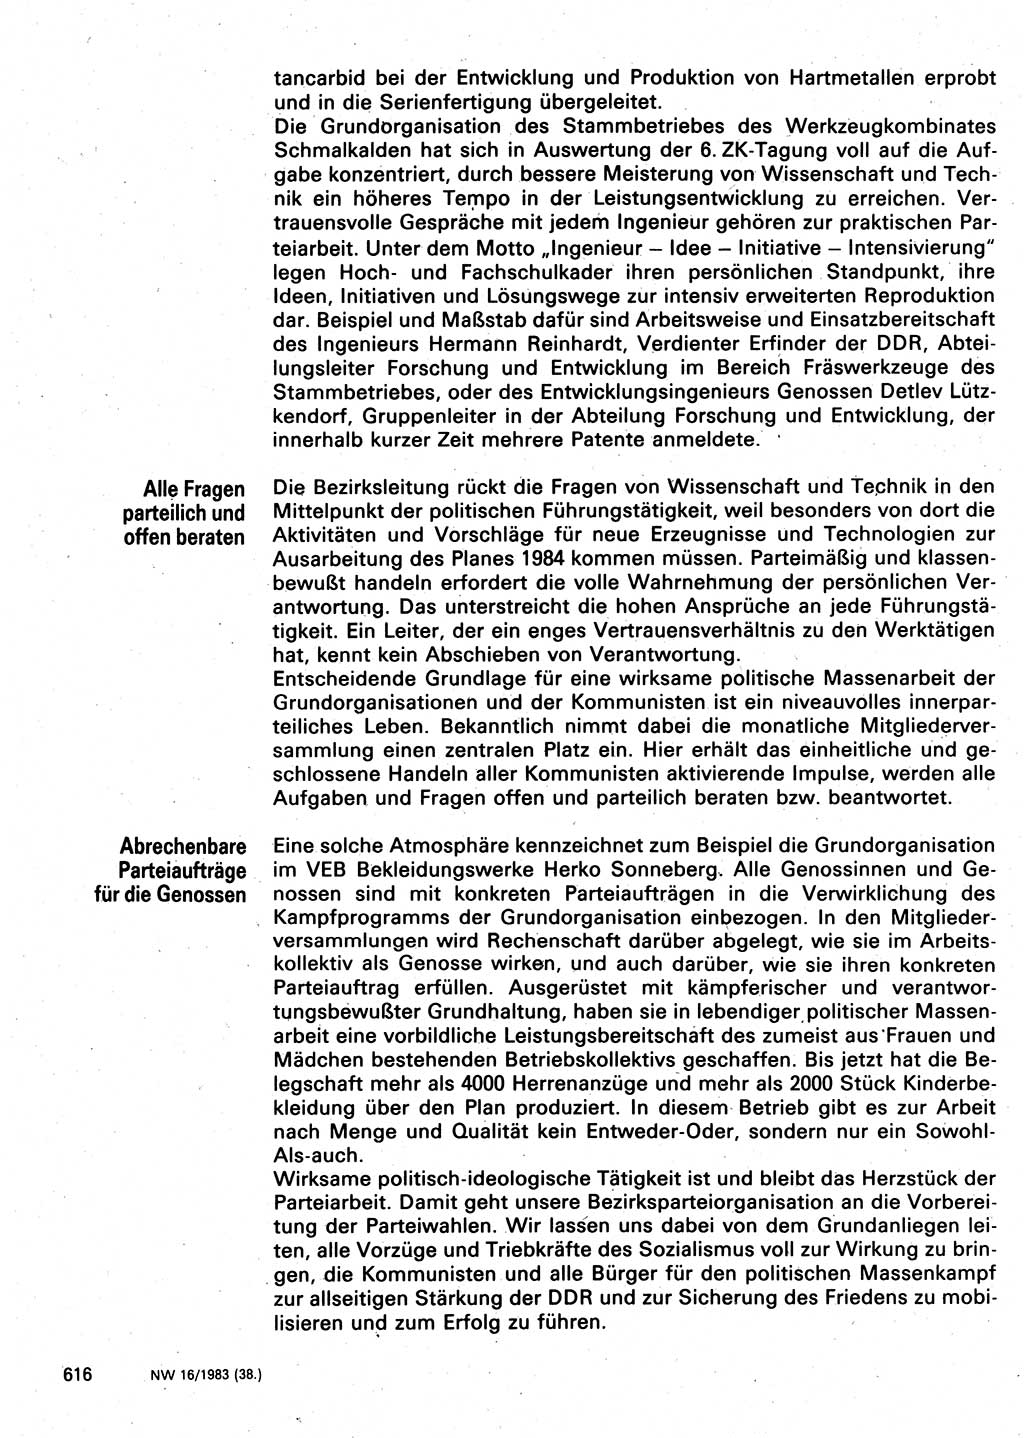 Neuer Weg (NW), Organ des Zentralkomitees (ZK) der SED (Sozialistische Einheitspartei Deutschlands) für Fragen des Parteilebens, 38. Jahrgang [Deutsche Demokratische Republik (DDR)] 1983, Seite 616 (NW ZK SED DDR 1983, S. 616)